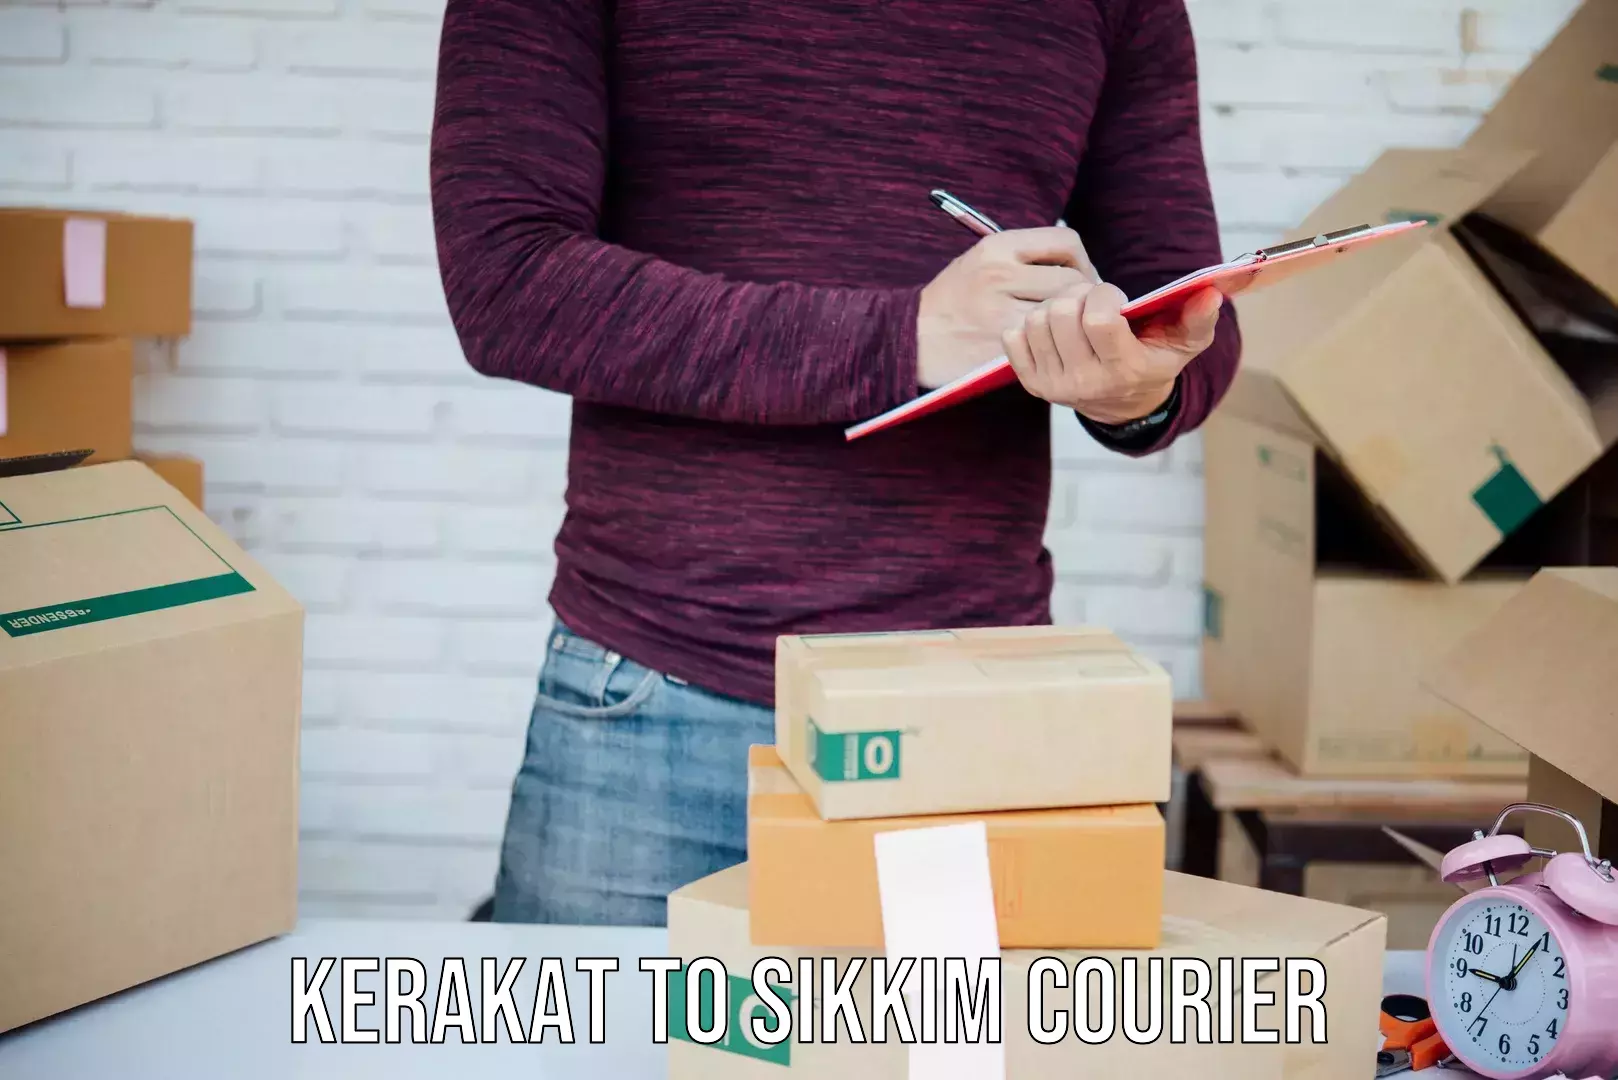 Lightweight parcel options in Kerakat to East Sikkim